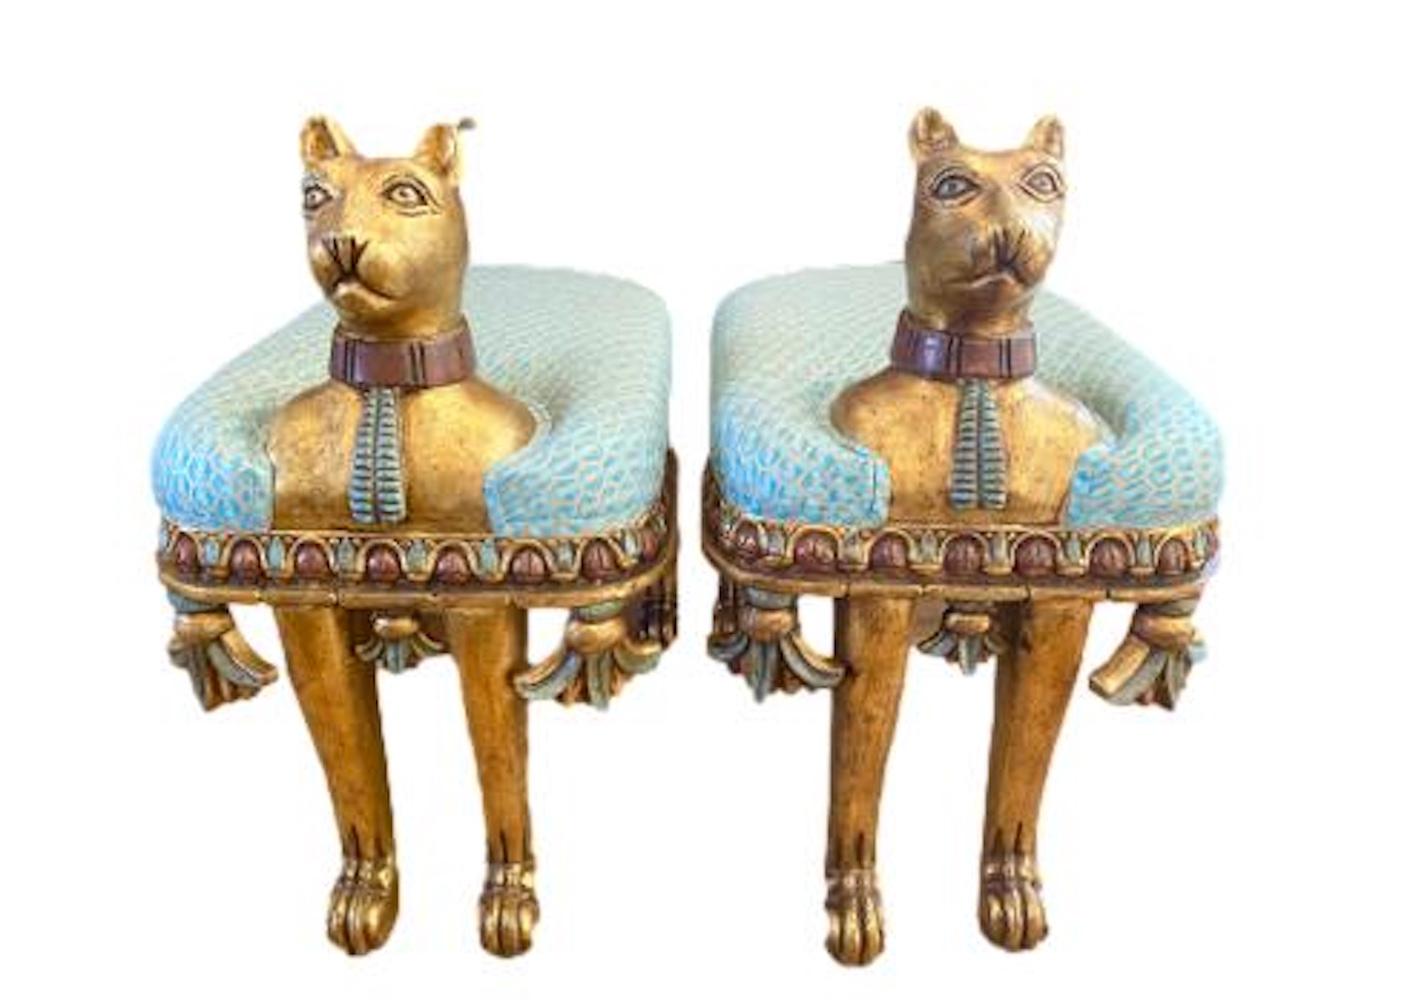 Einzigartiges Paar Katzenbänke aus der Ägyptischen Wiedergeburt, neu gepolstert mit venezianischem Stoff von Fortuny.... geschnitztem Holz, vergoldet und bemalt....